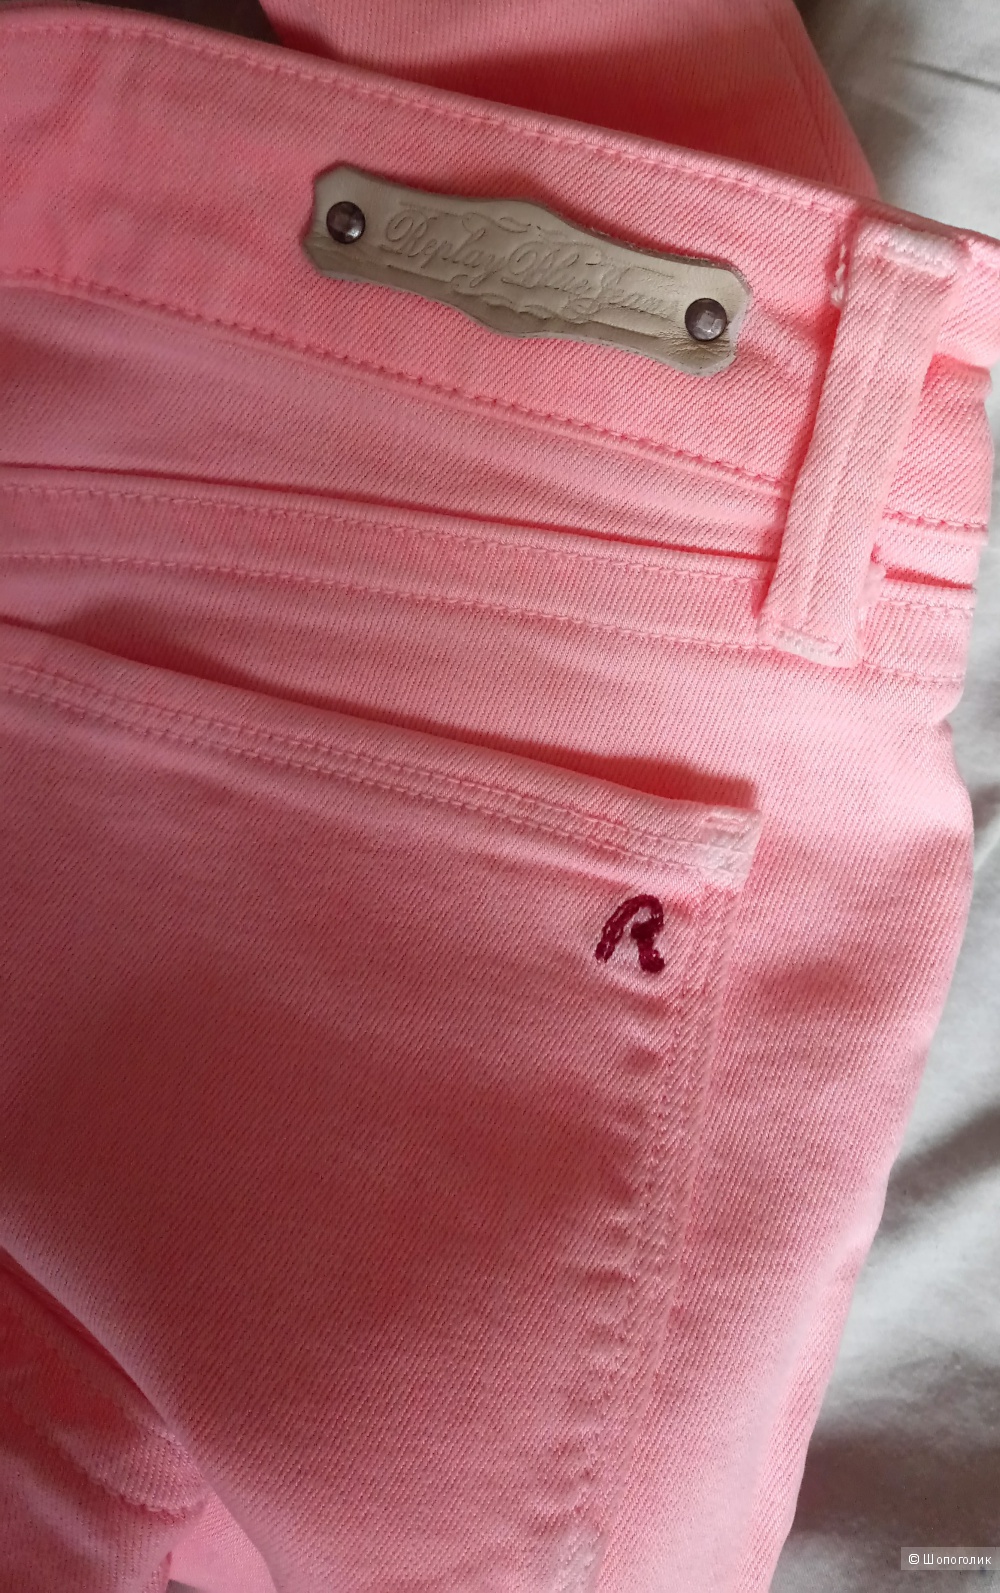 Джинсы REPLAY LUZ SUPER SKINNY Jeans яркие нежно-розового цвета